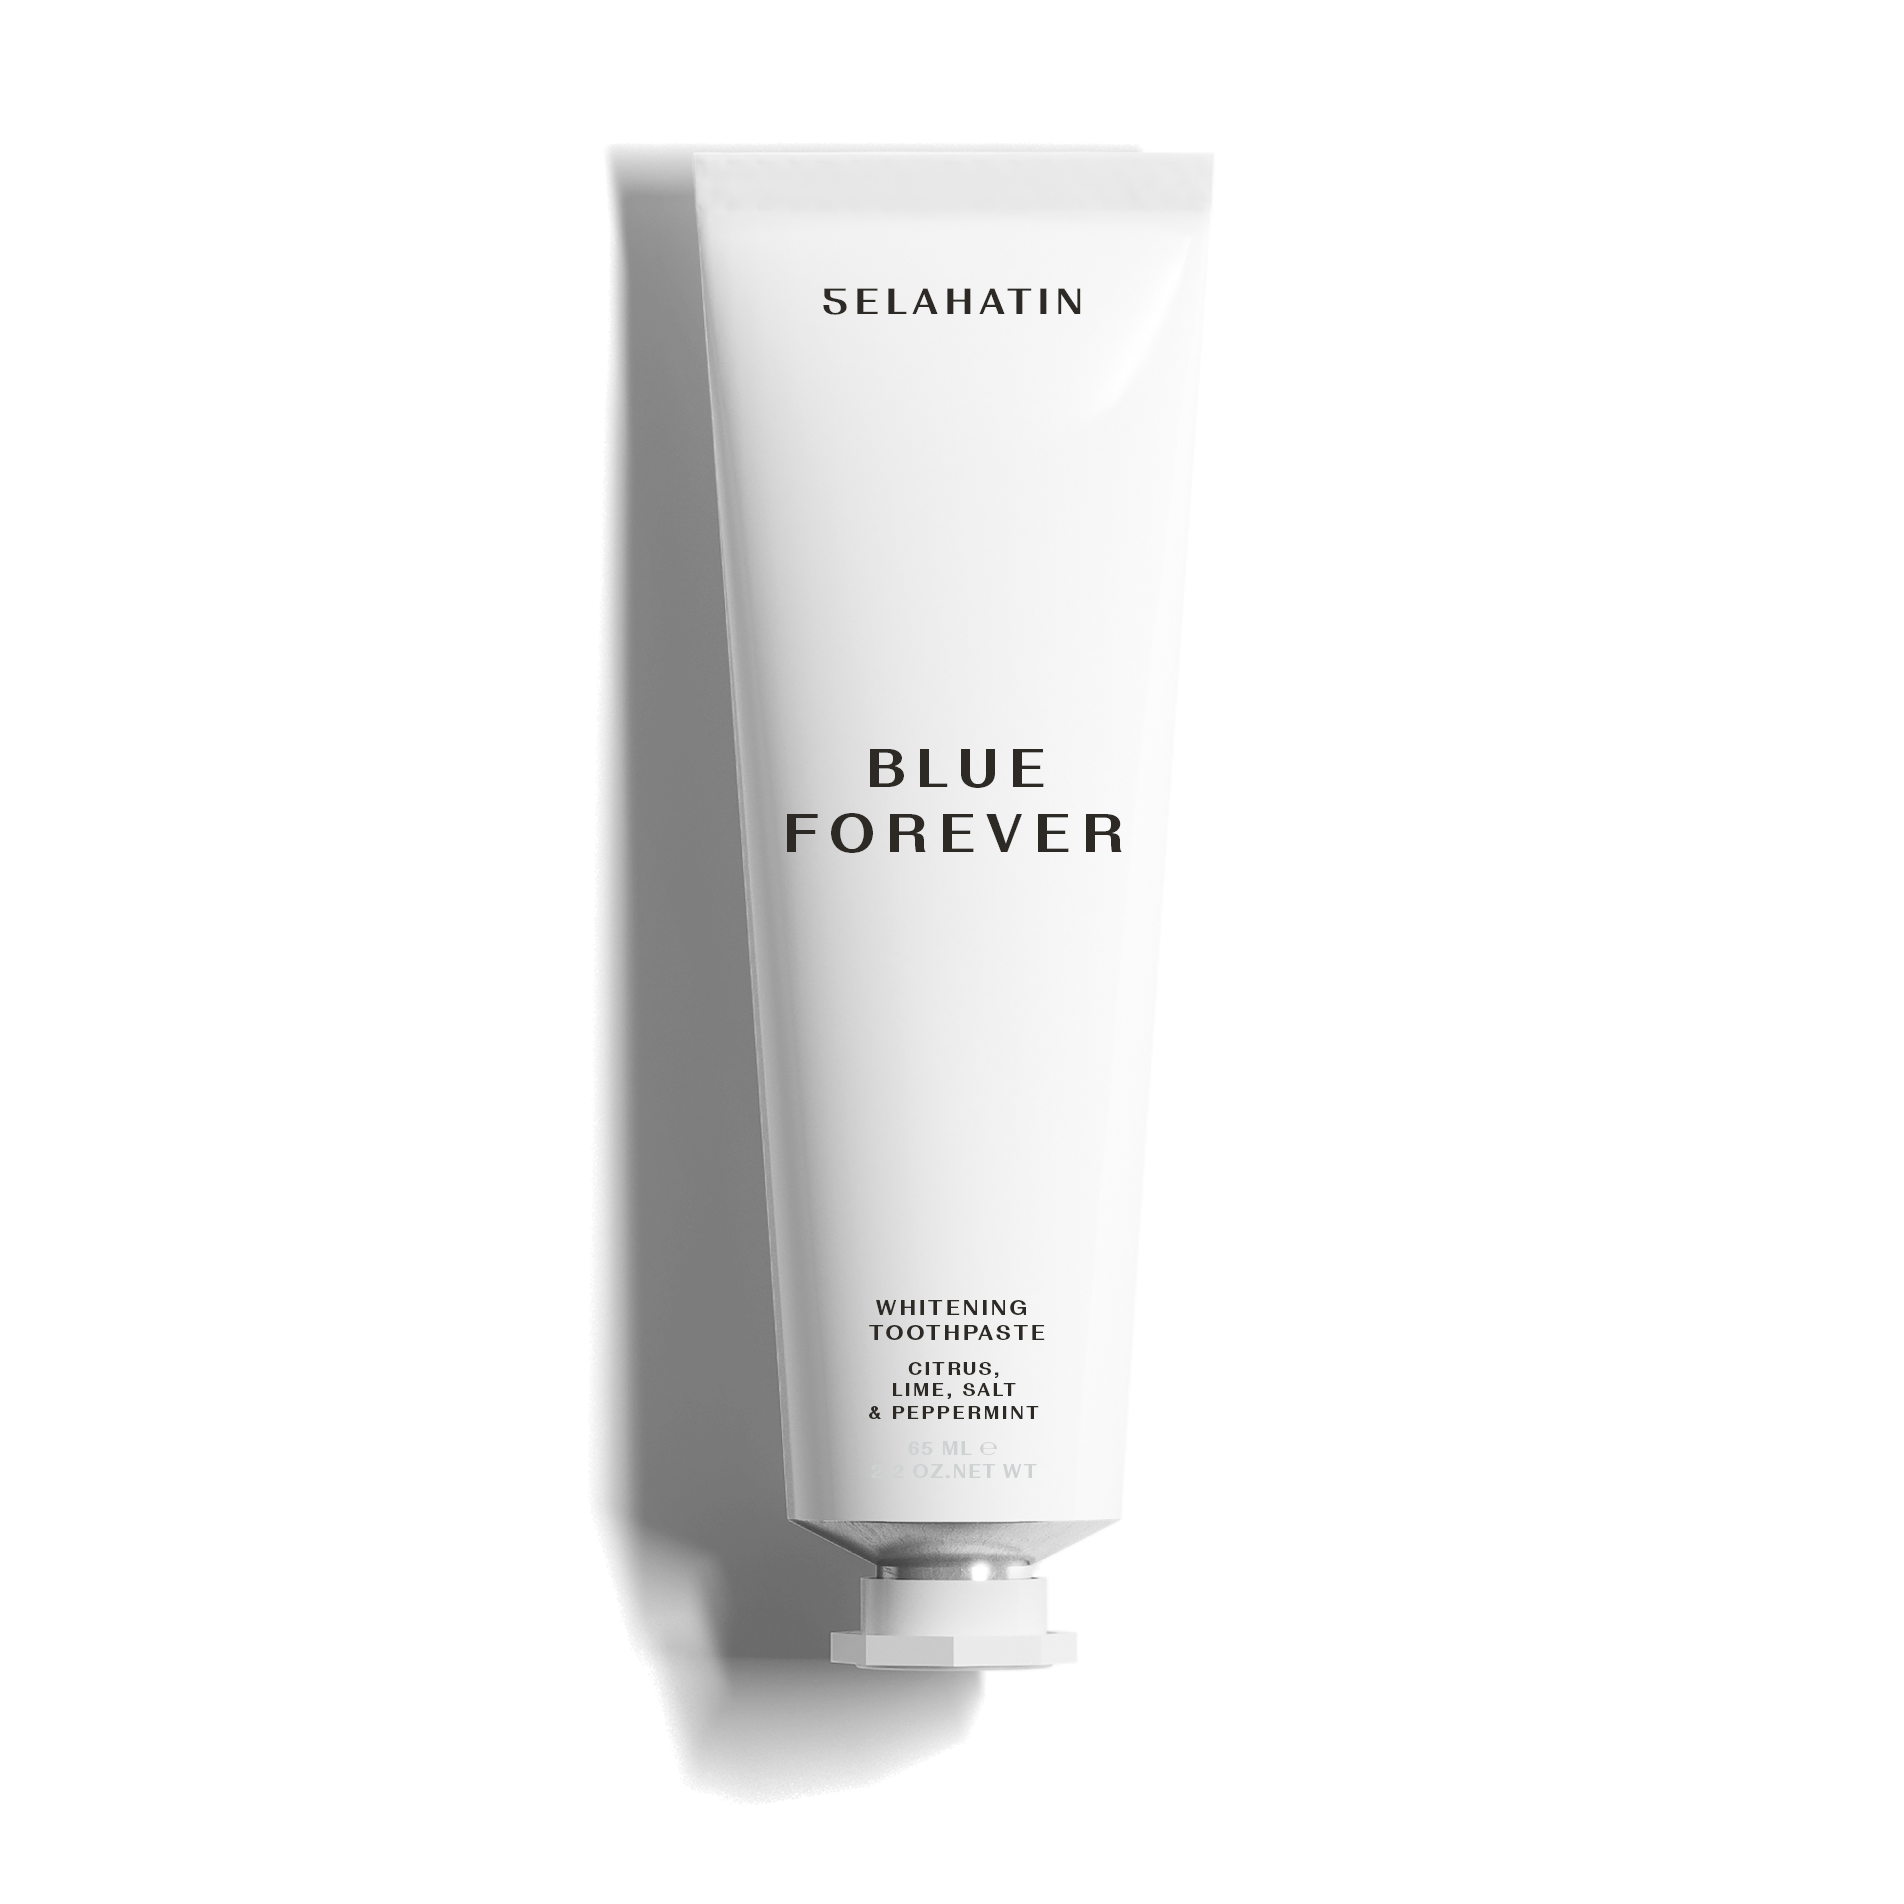 Selahatin Whitening Toothpaste - Blue Forever - 65ml